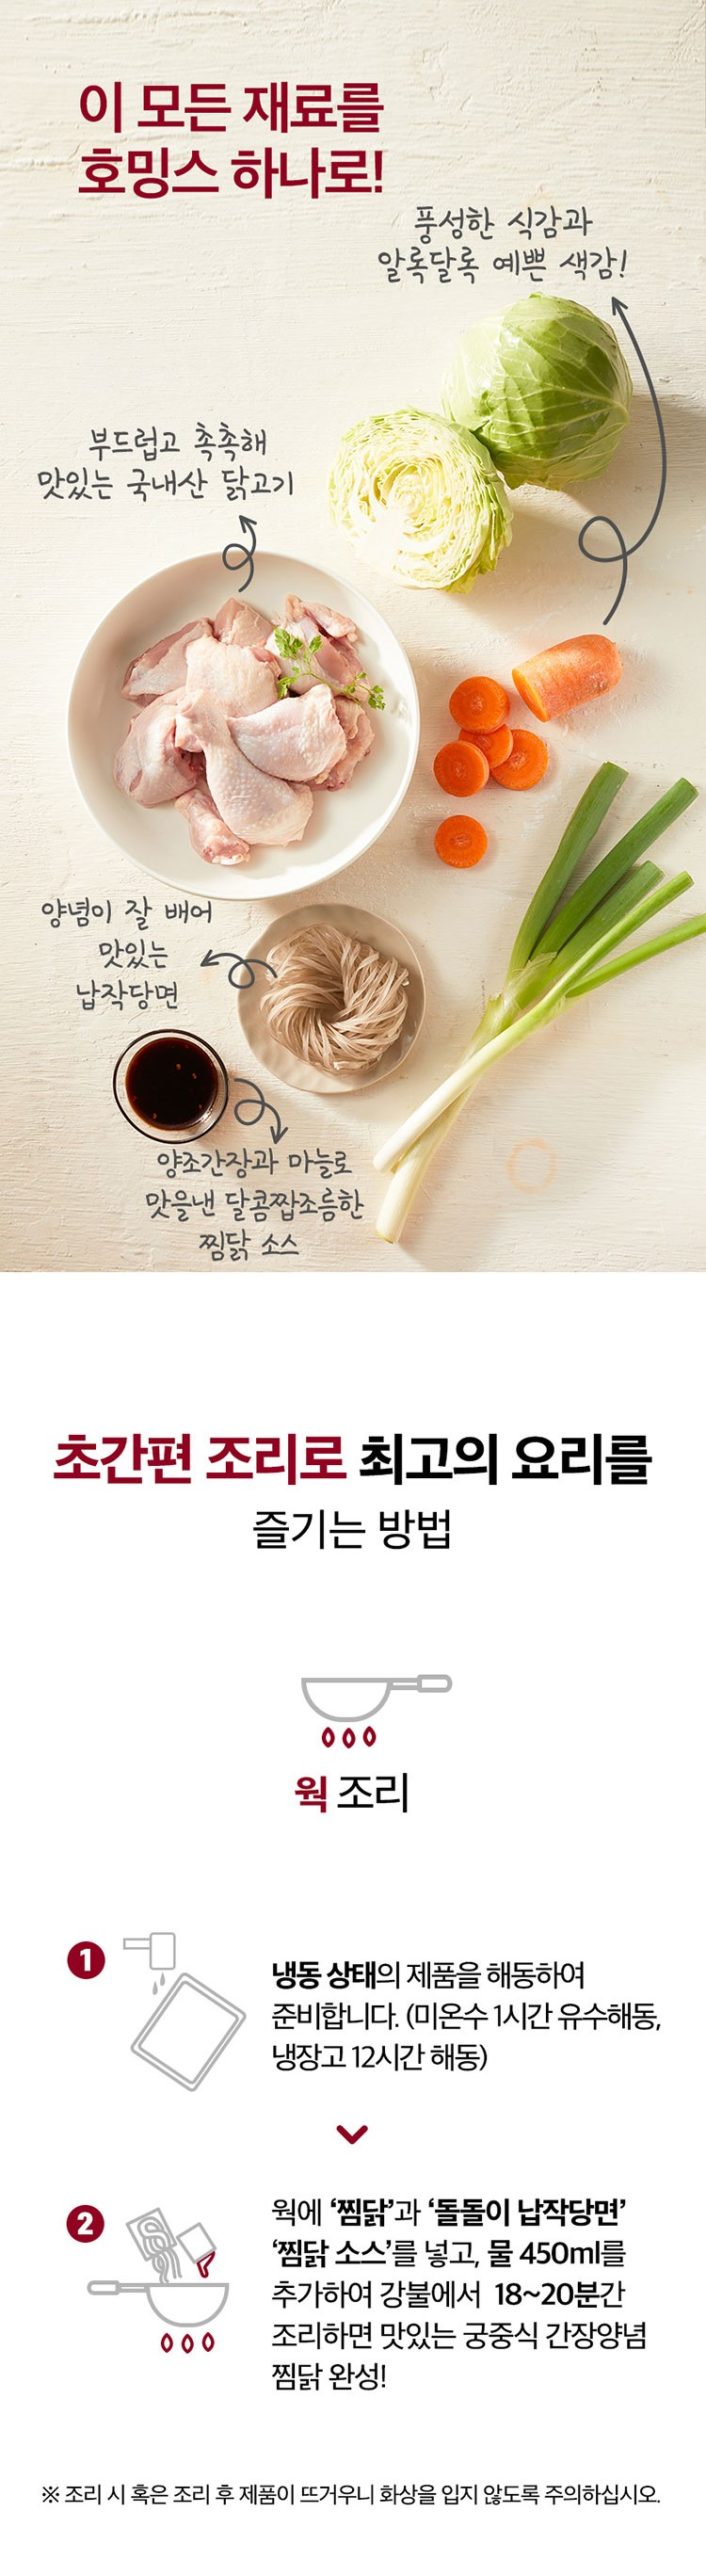 韓國食品-[CJO] 호밍스 궁중식 간장양념 찜닭 670g